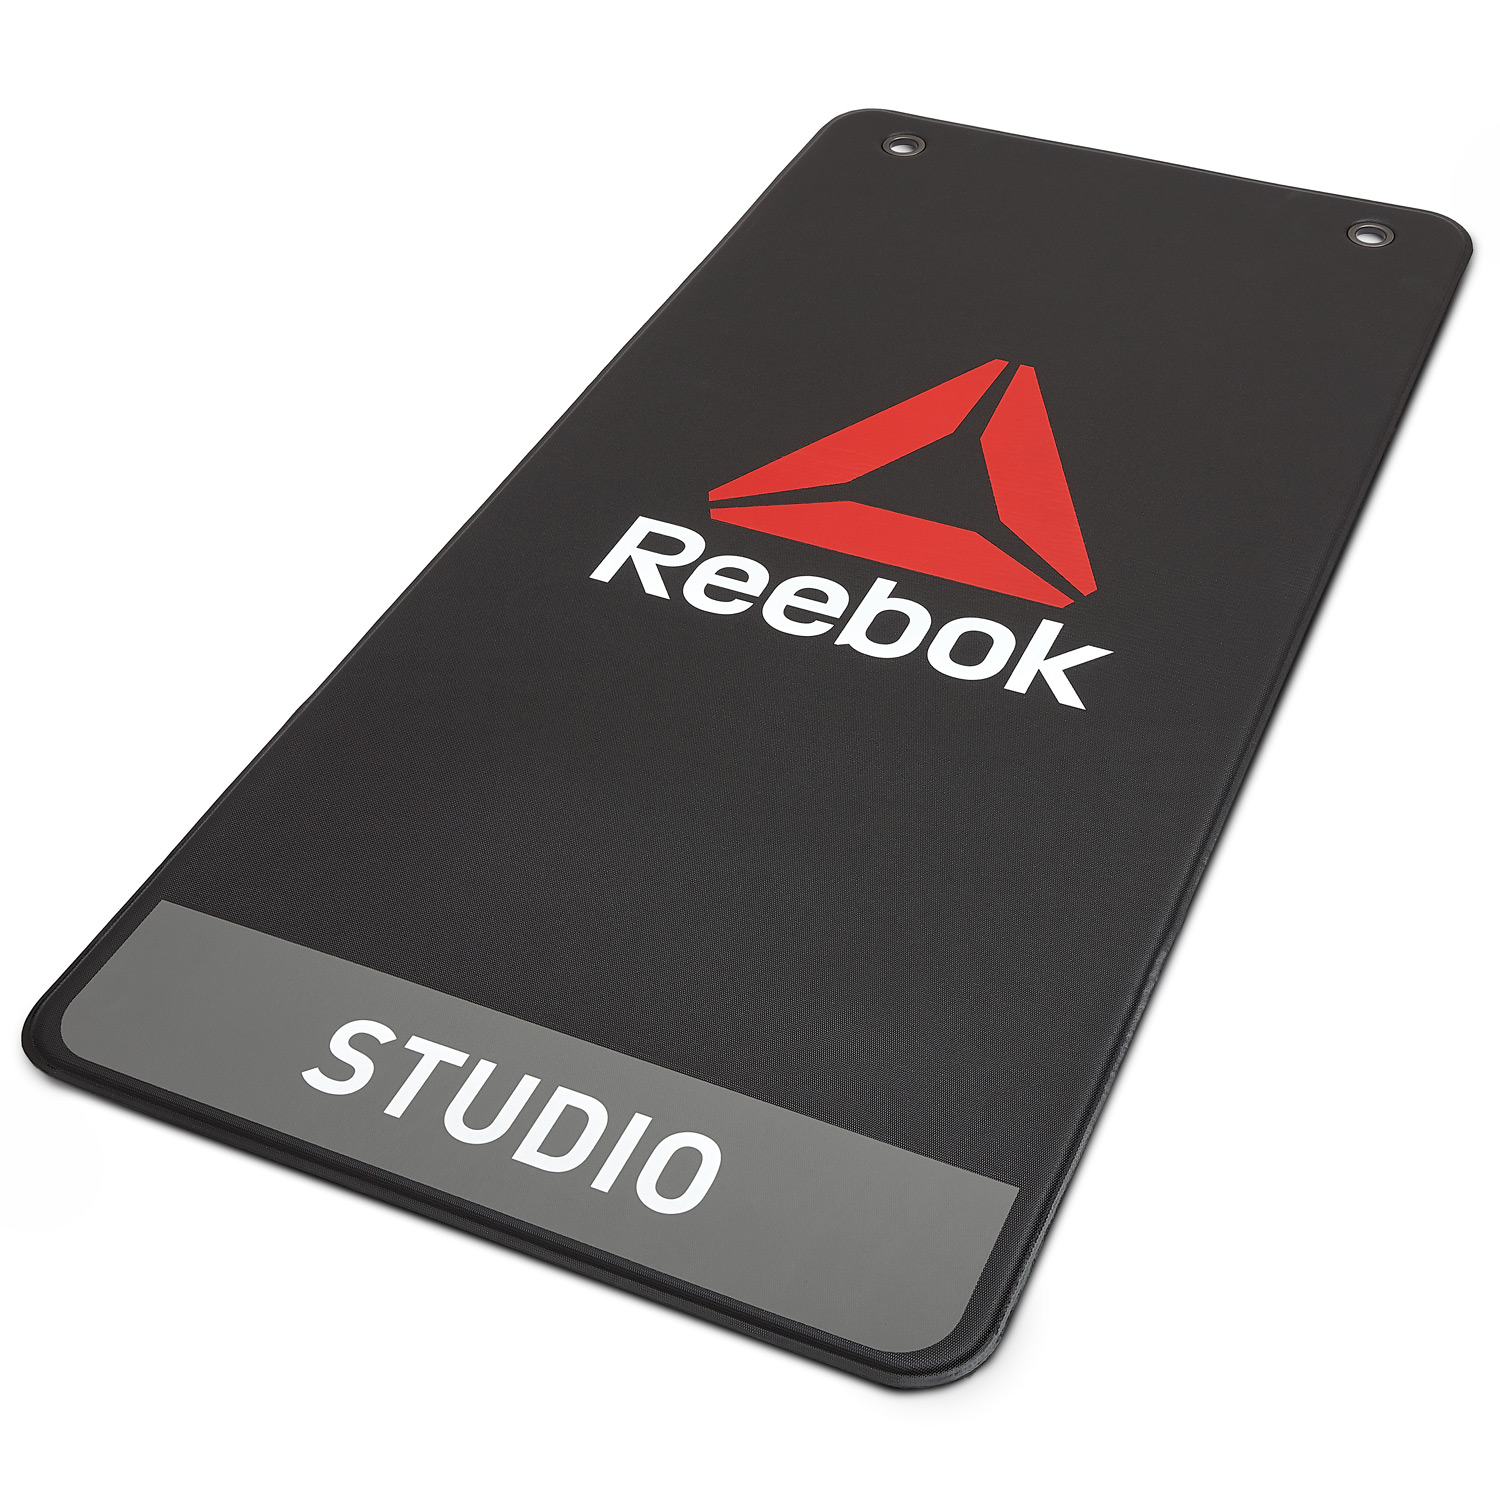    Reebok Studio Mat RSYG-16021bk 